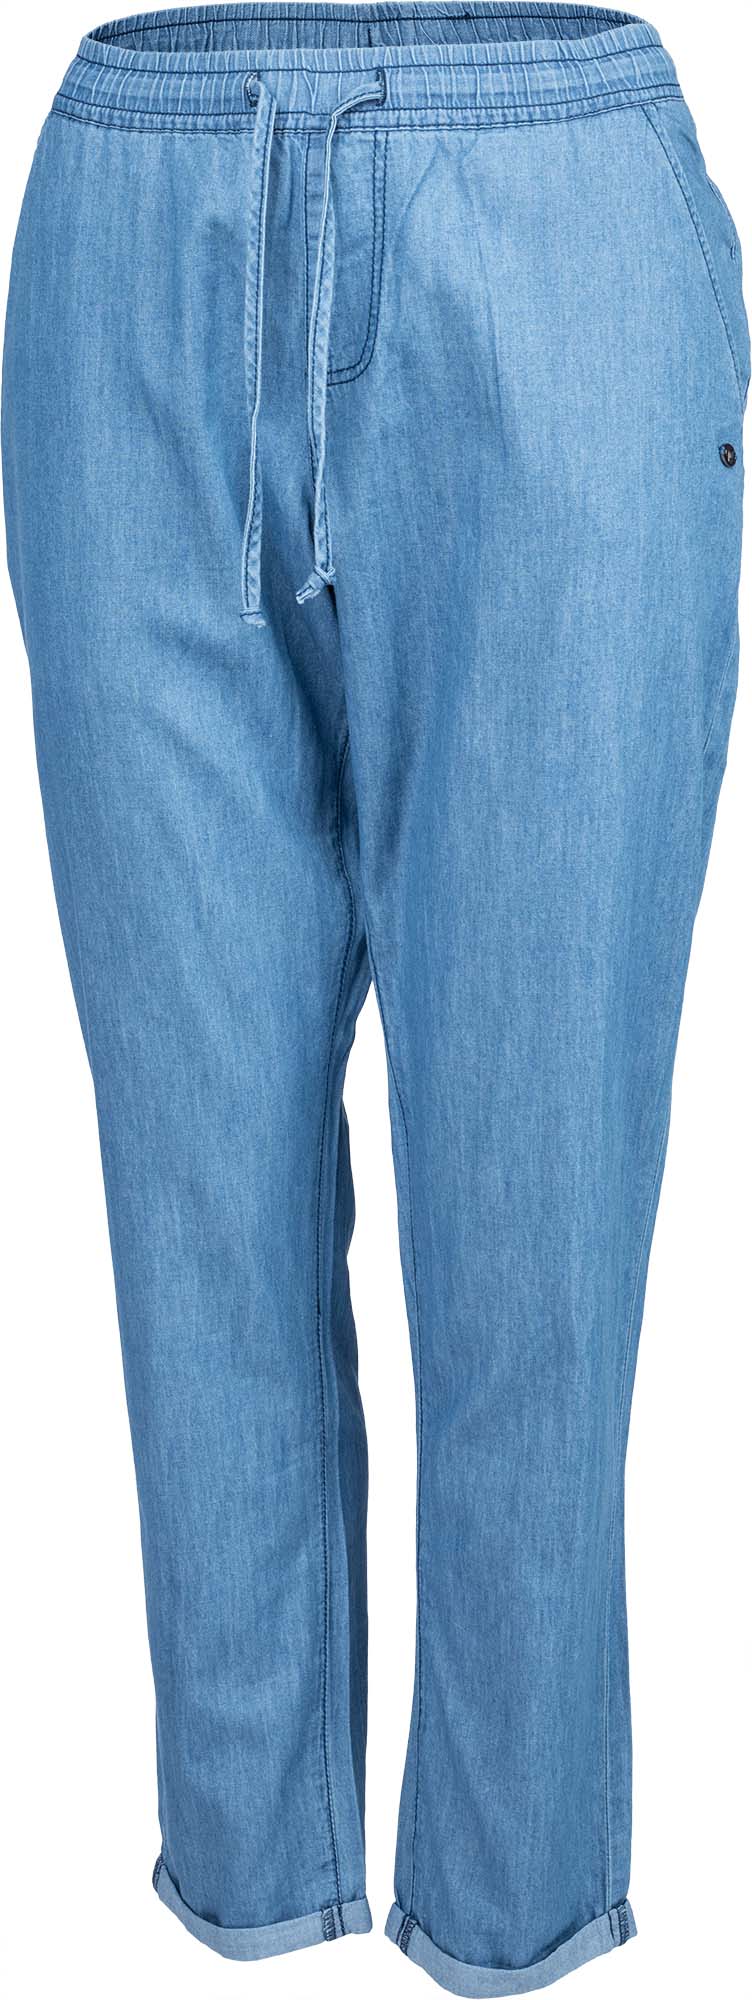 Dámske plátené nohavice džínsového vzhľadu